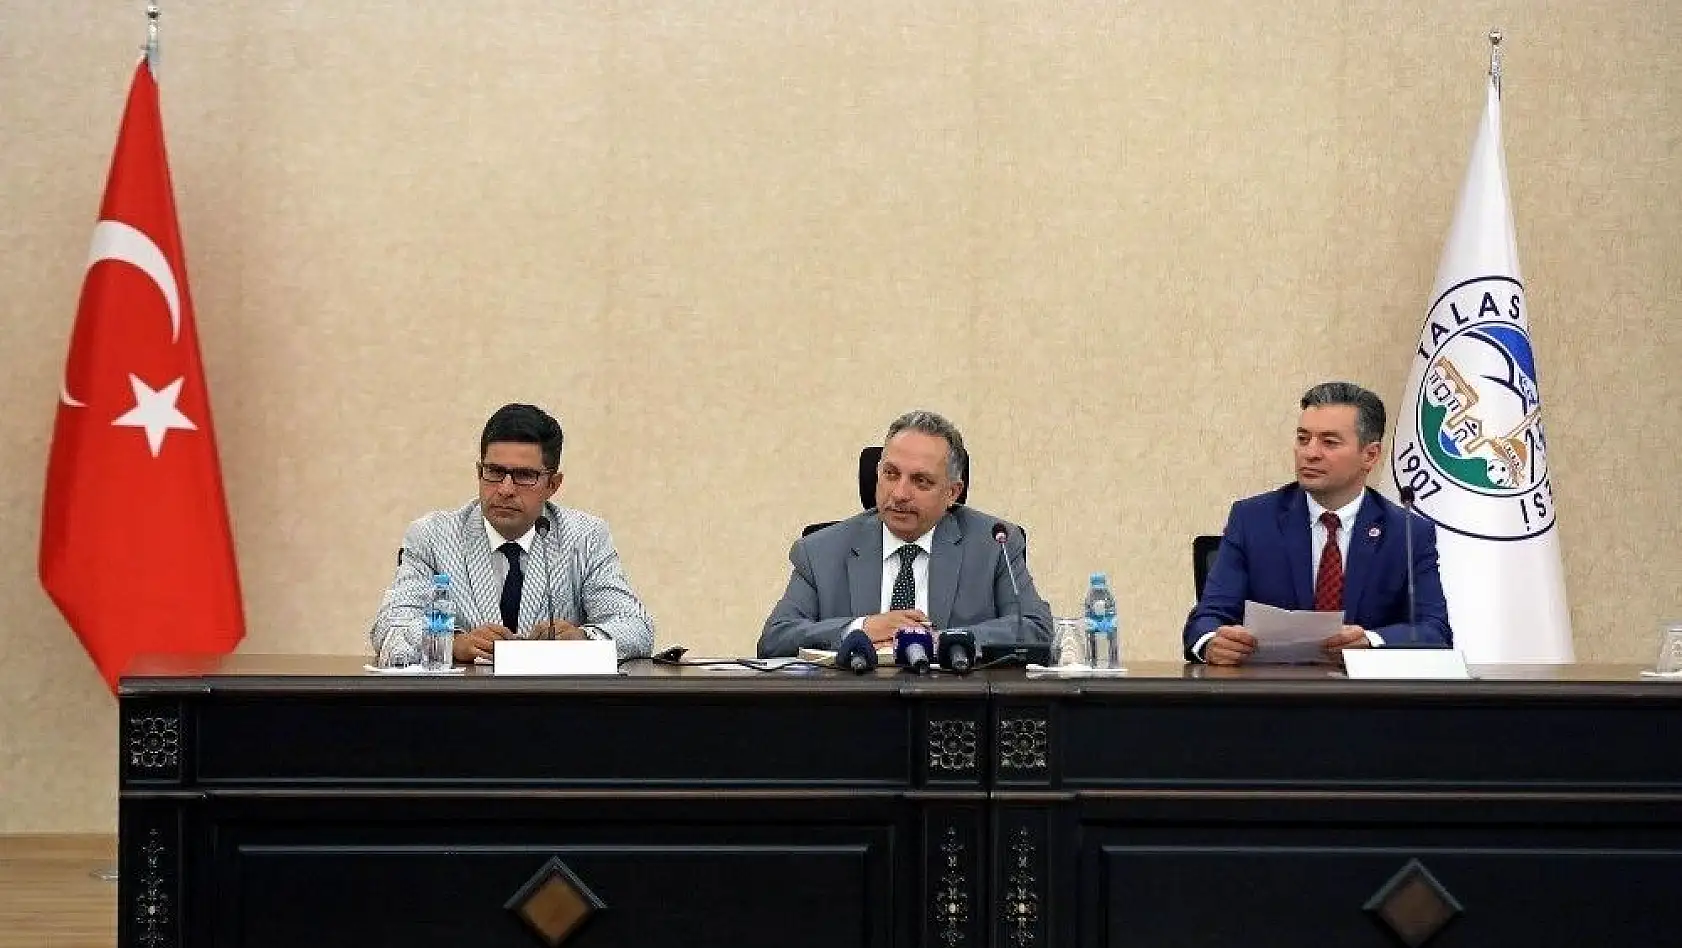 Talas Belediyesi Temmuz Ayı Meclis Toplantısı yapıldı
